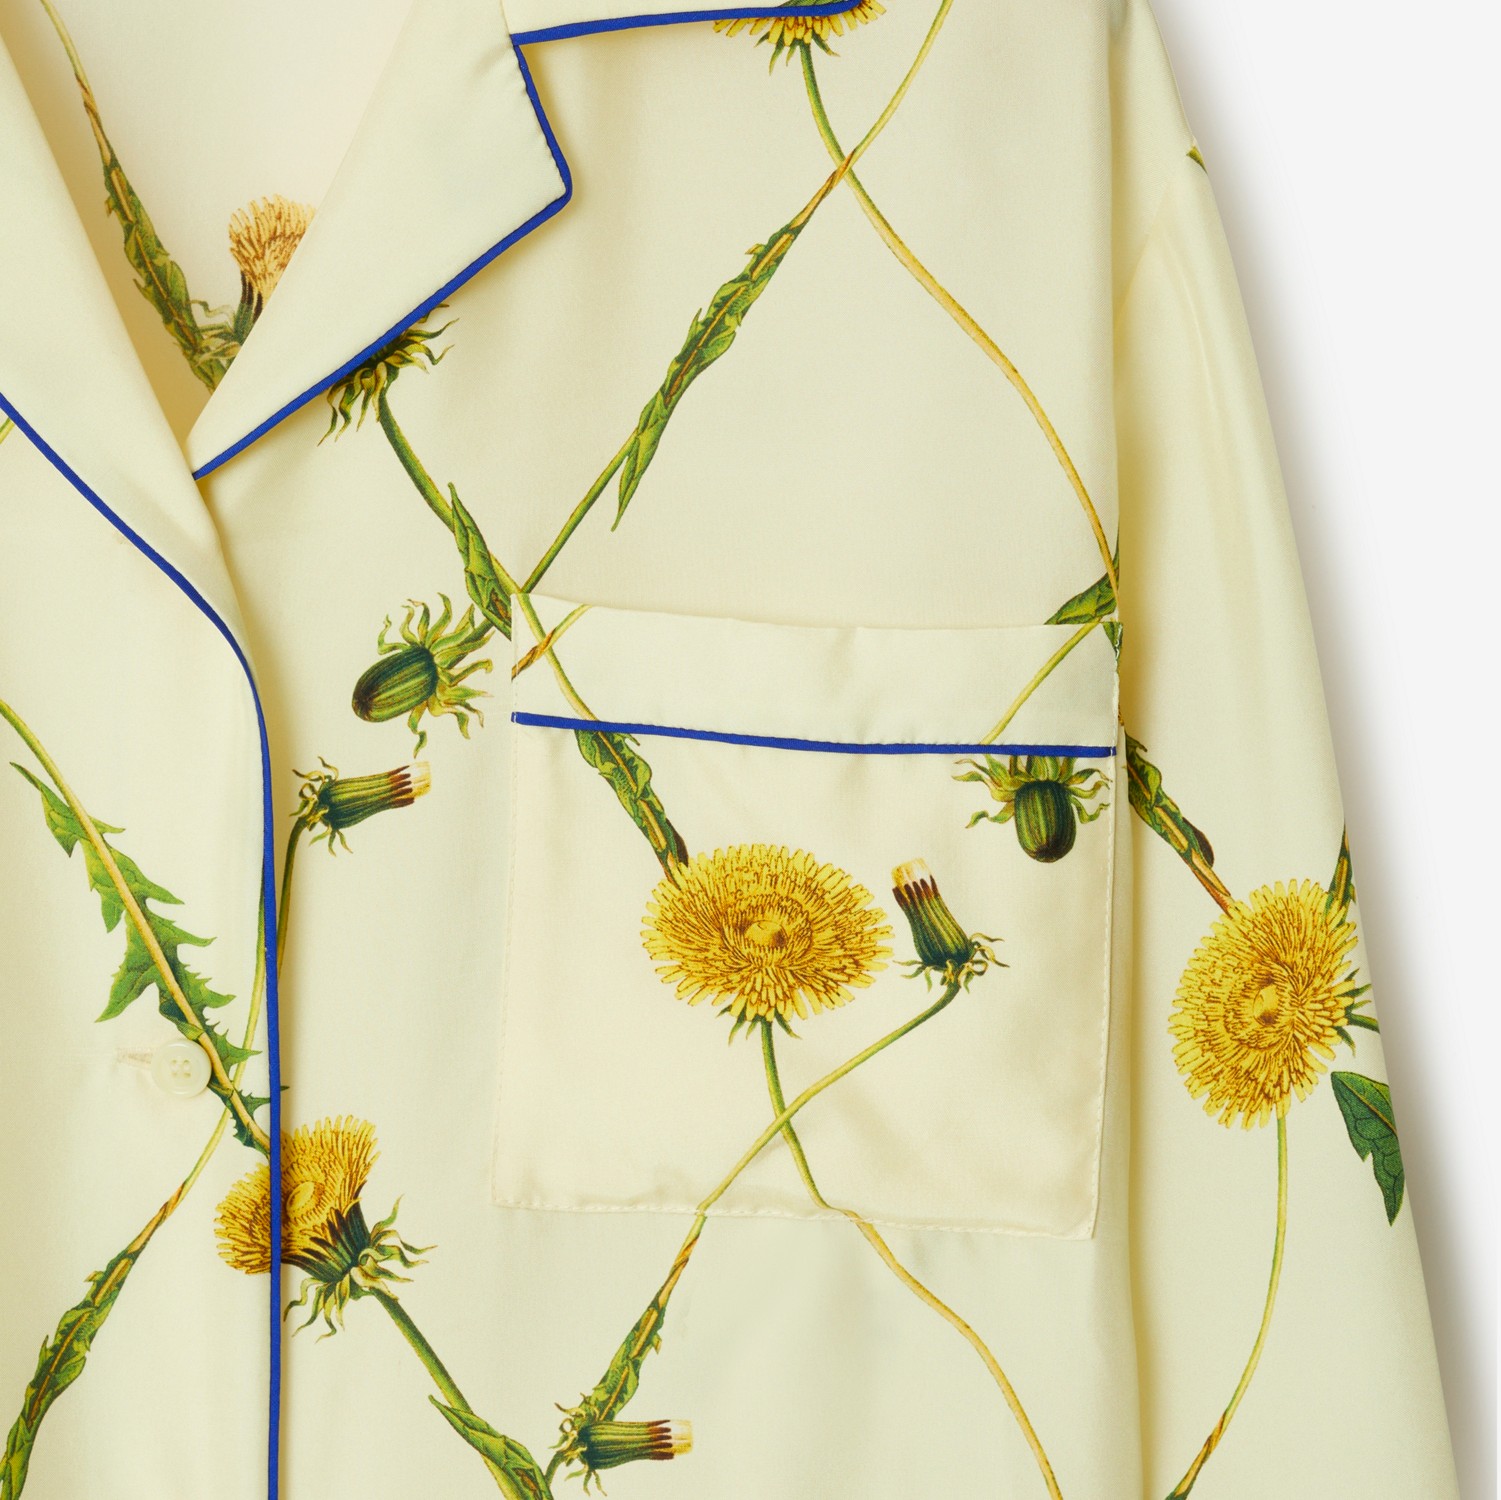 Dandelion Silk Pyjama Shirt